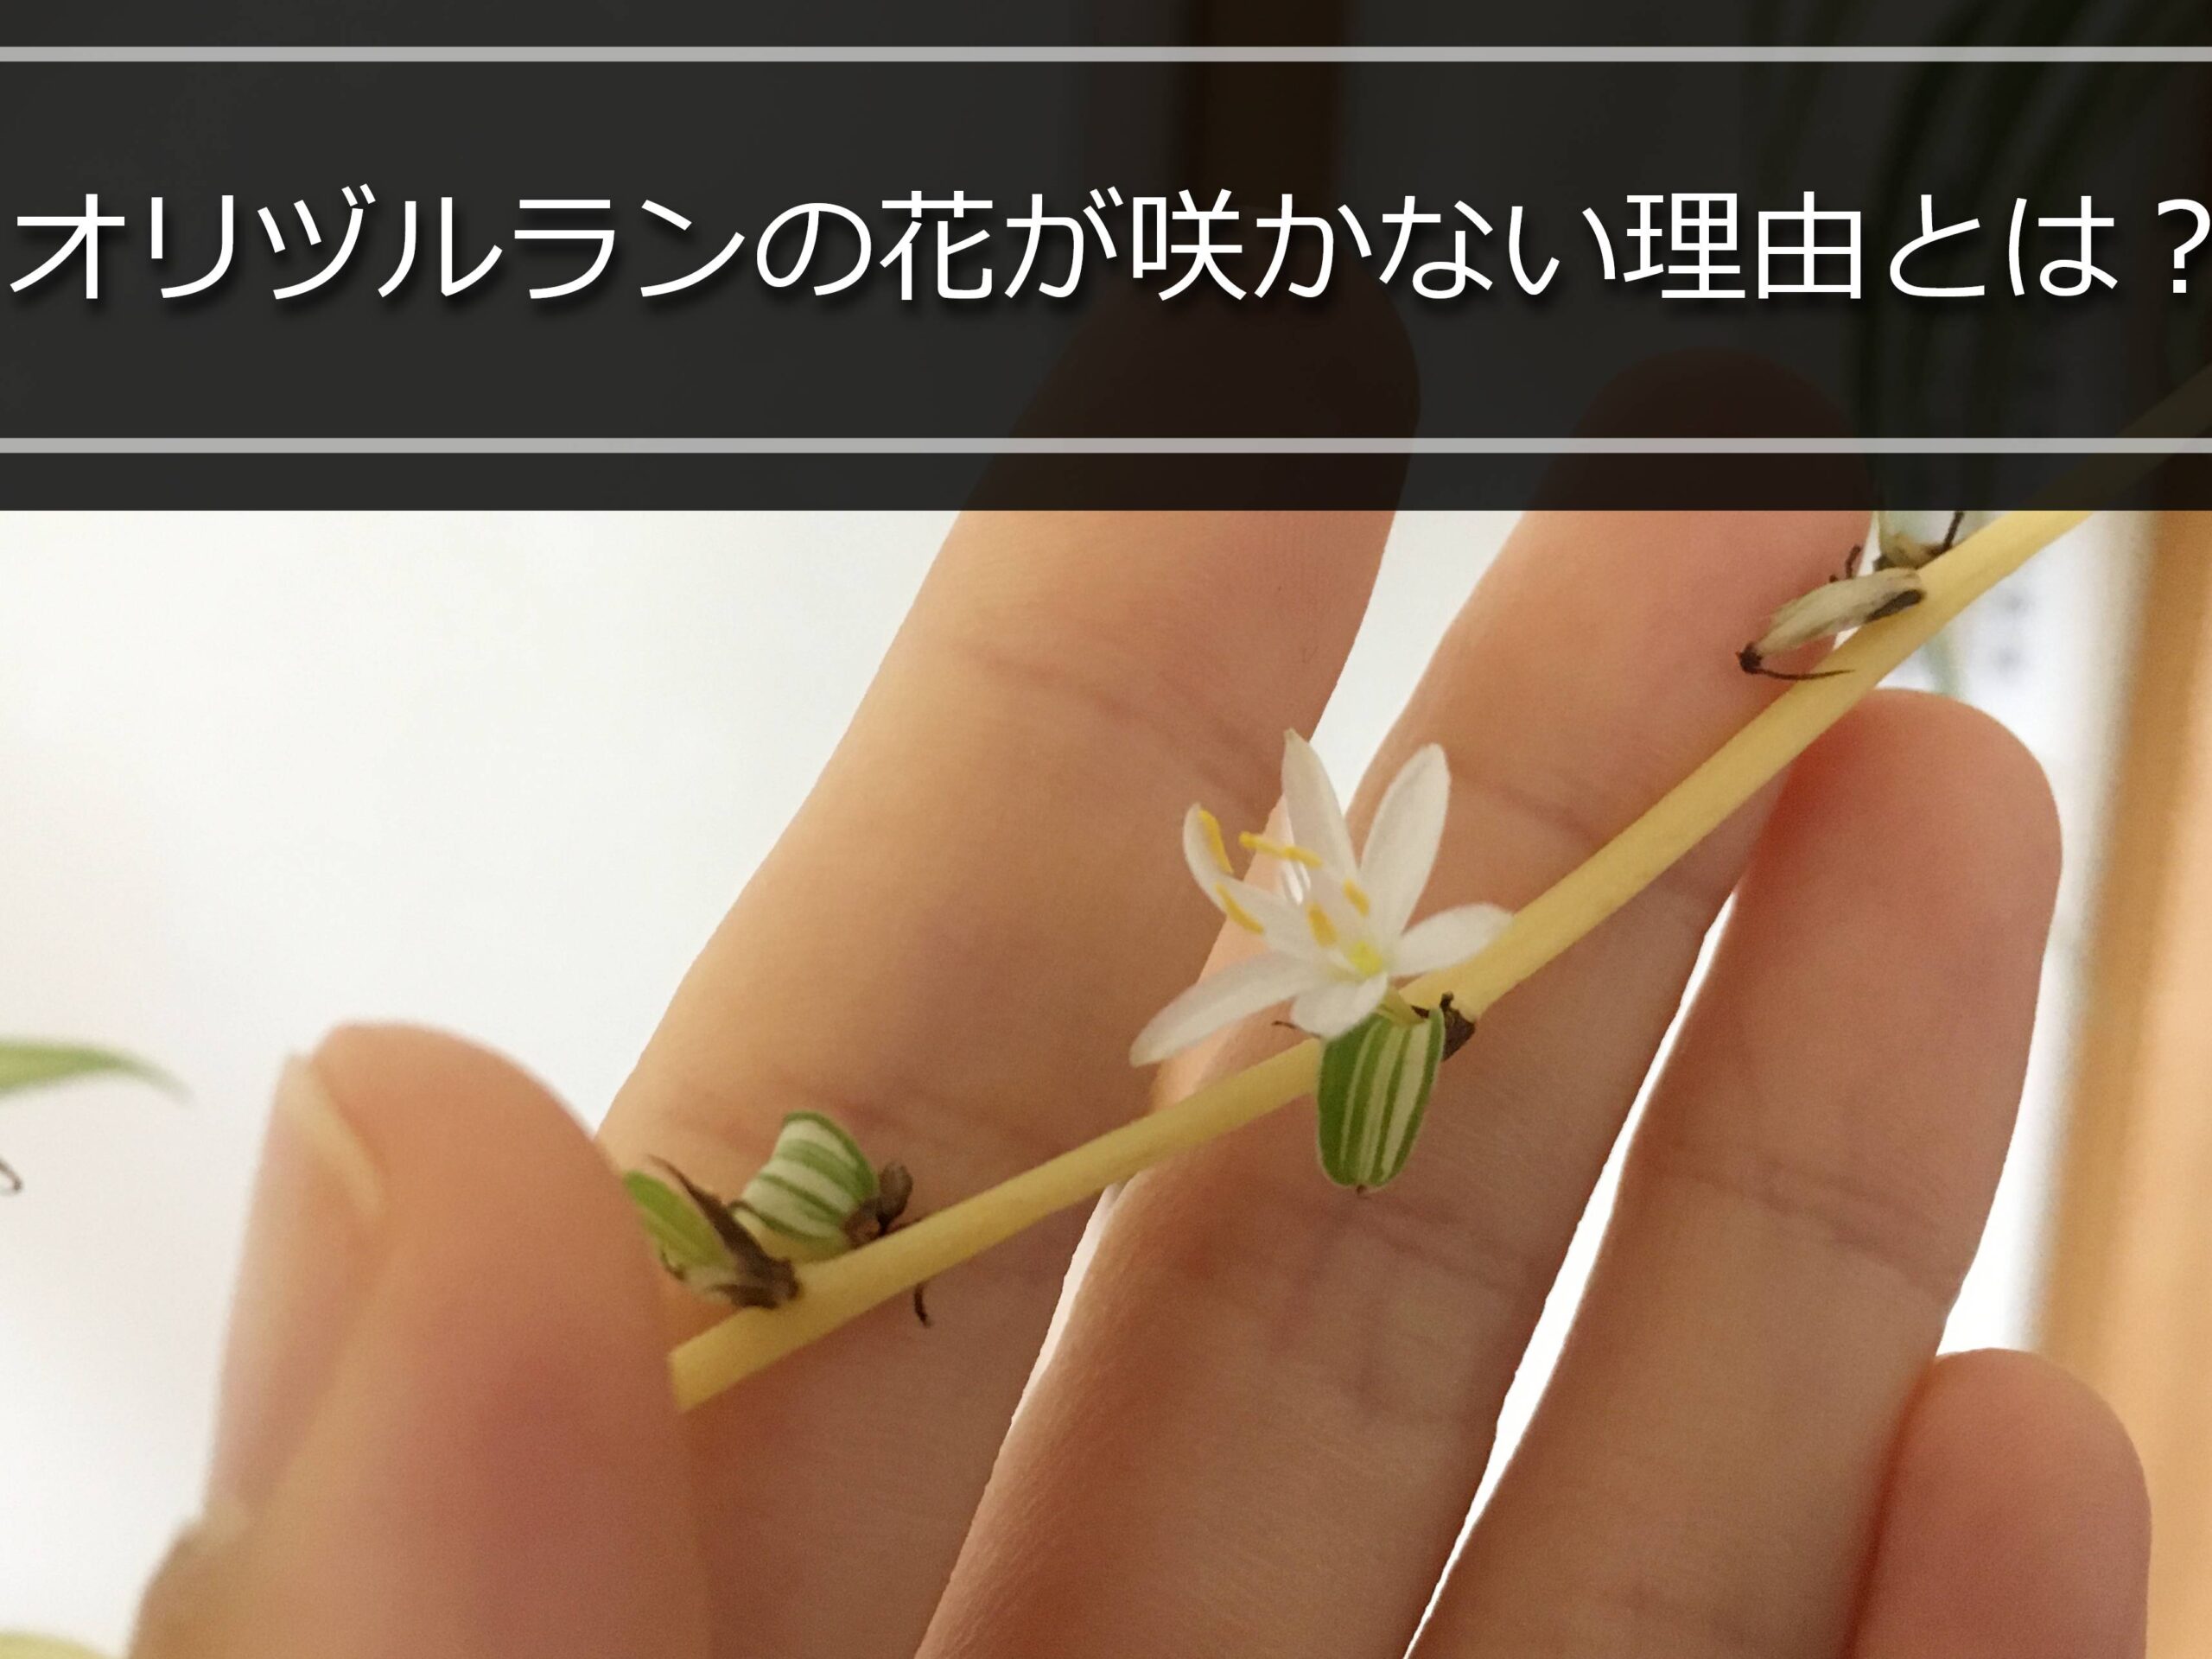 オリヅルランの花